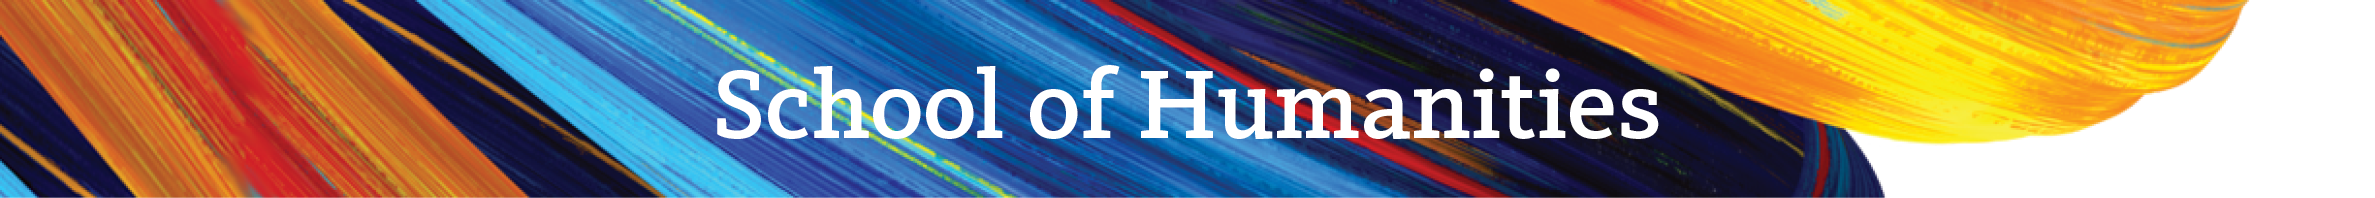 School of Humanities banner